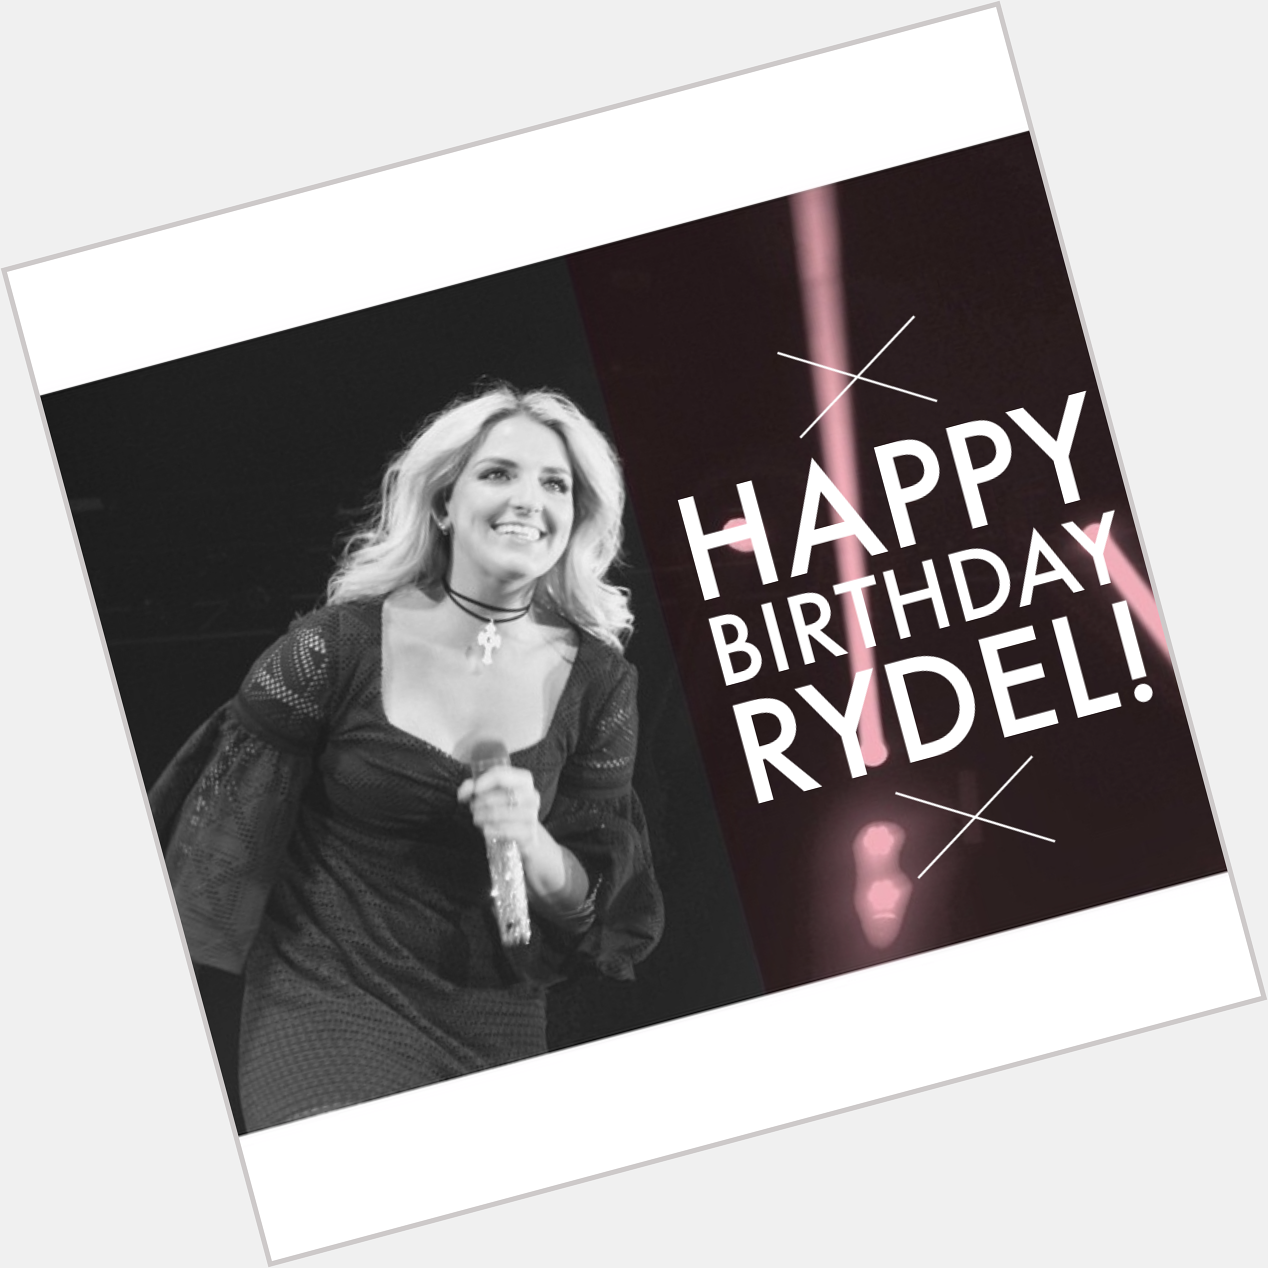   Ready5etROCK: Happy 22nd Birthday Rydel Lynch:  